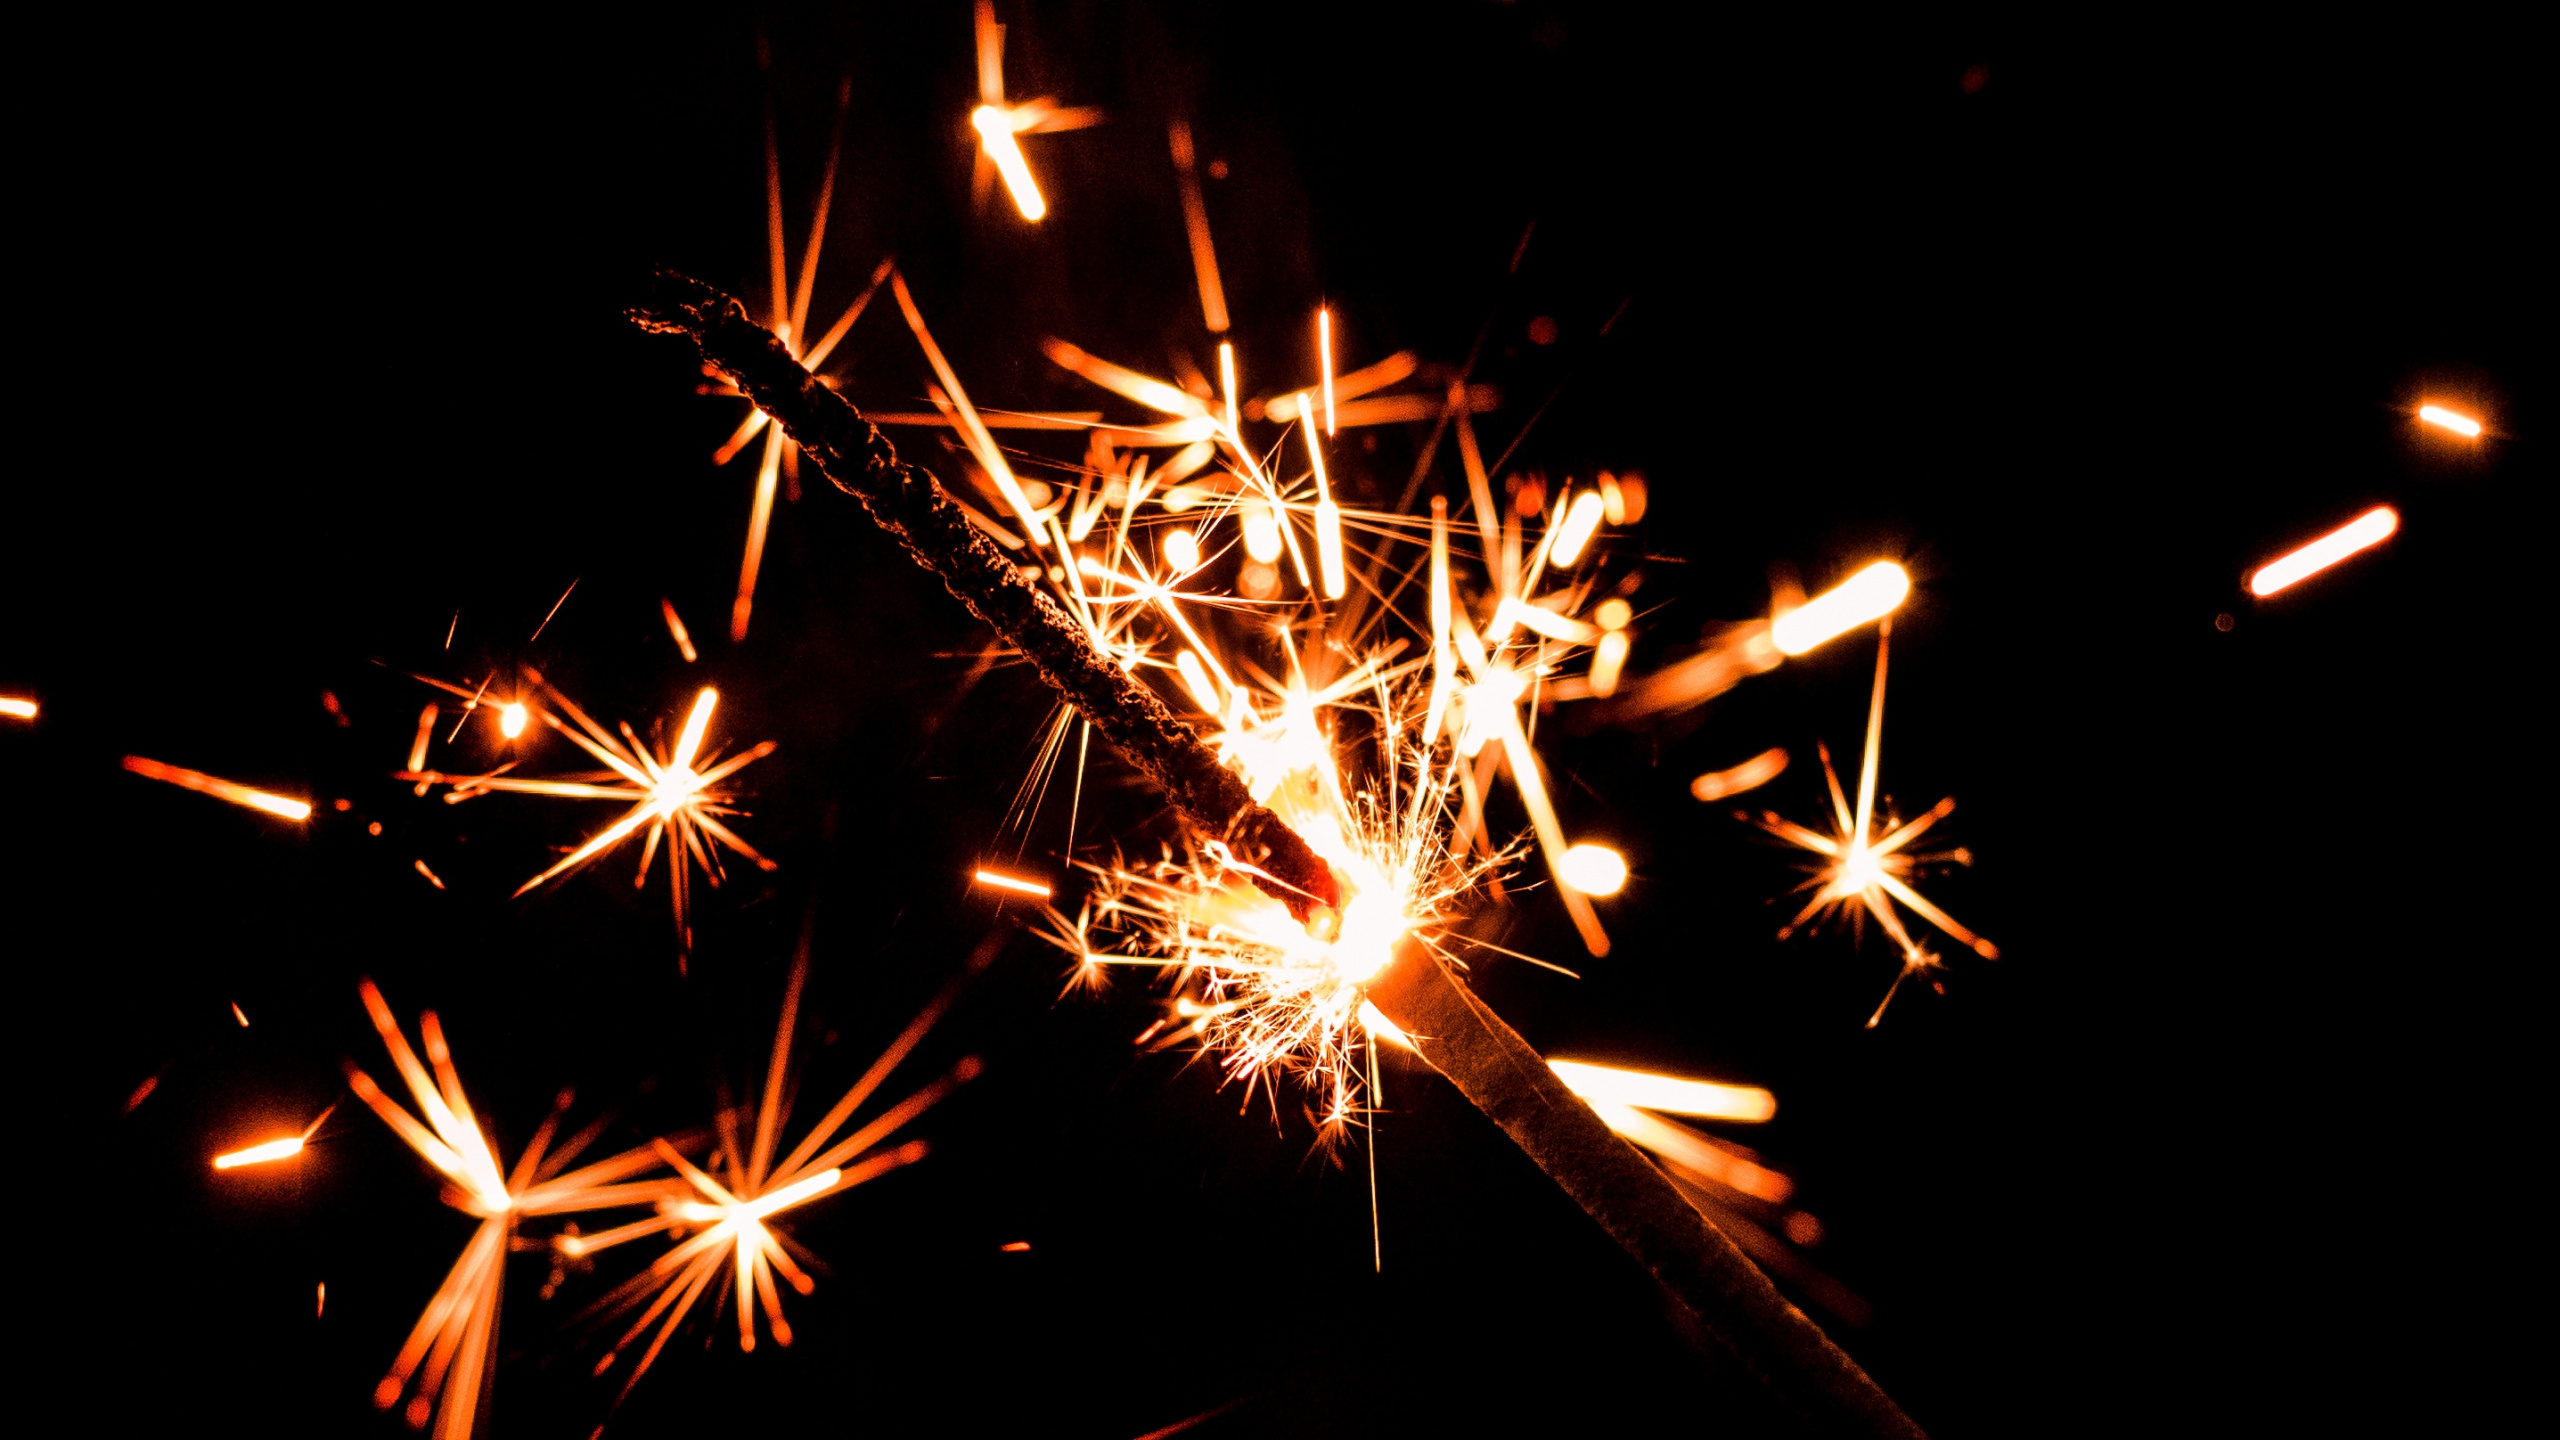 Fireworks, Spark, Sparkler, Diwali, Midnight. Wallpaper in 2560x1440 Resolution